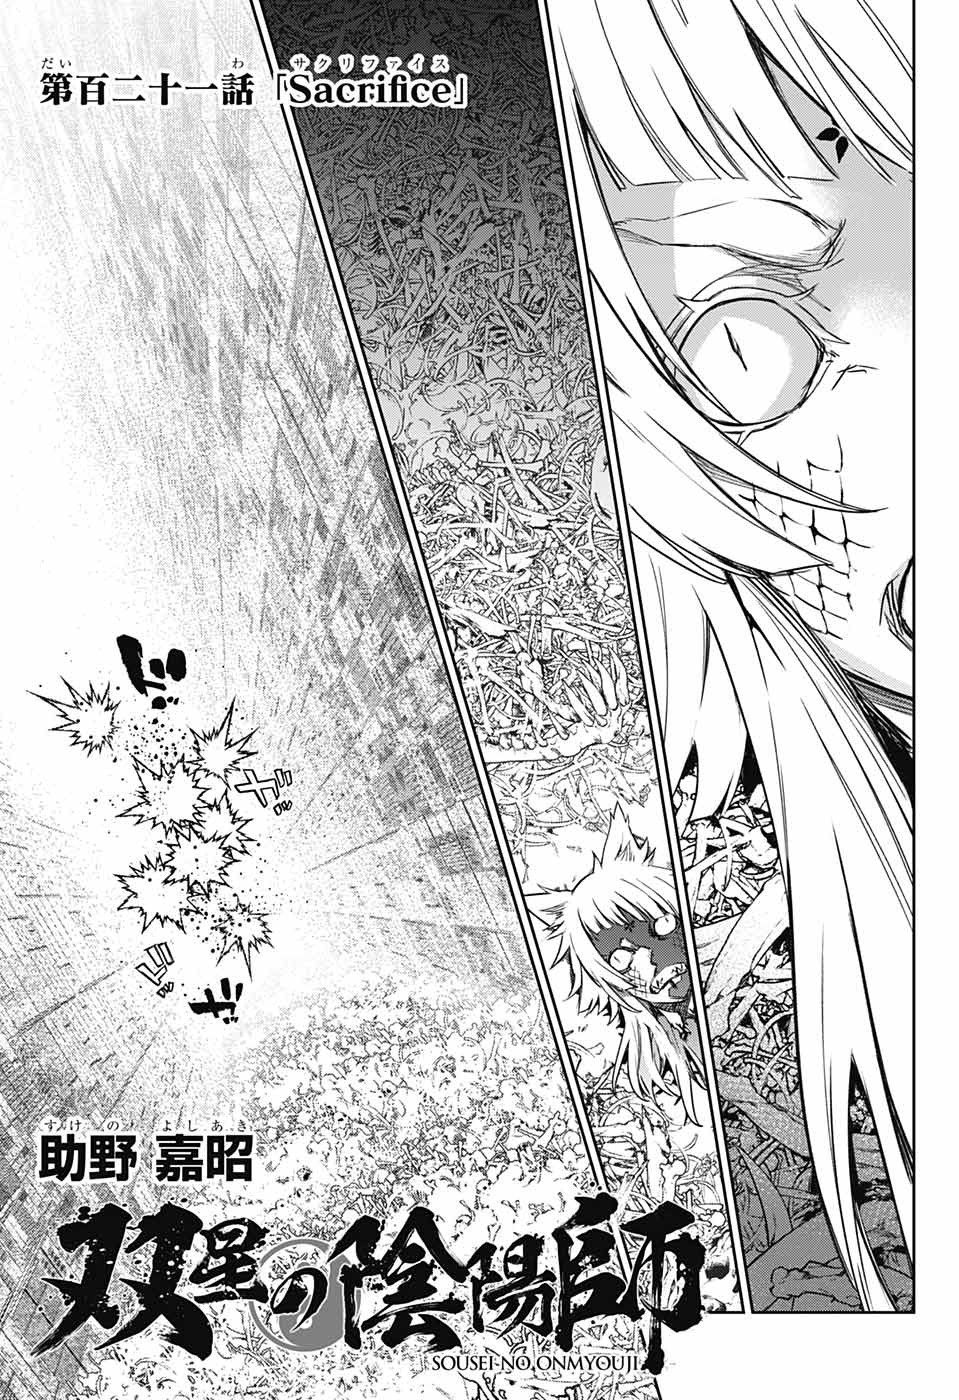 Sousei no Onmyouji - Chapter 121 - Page 3